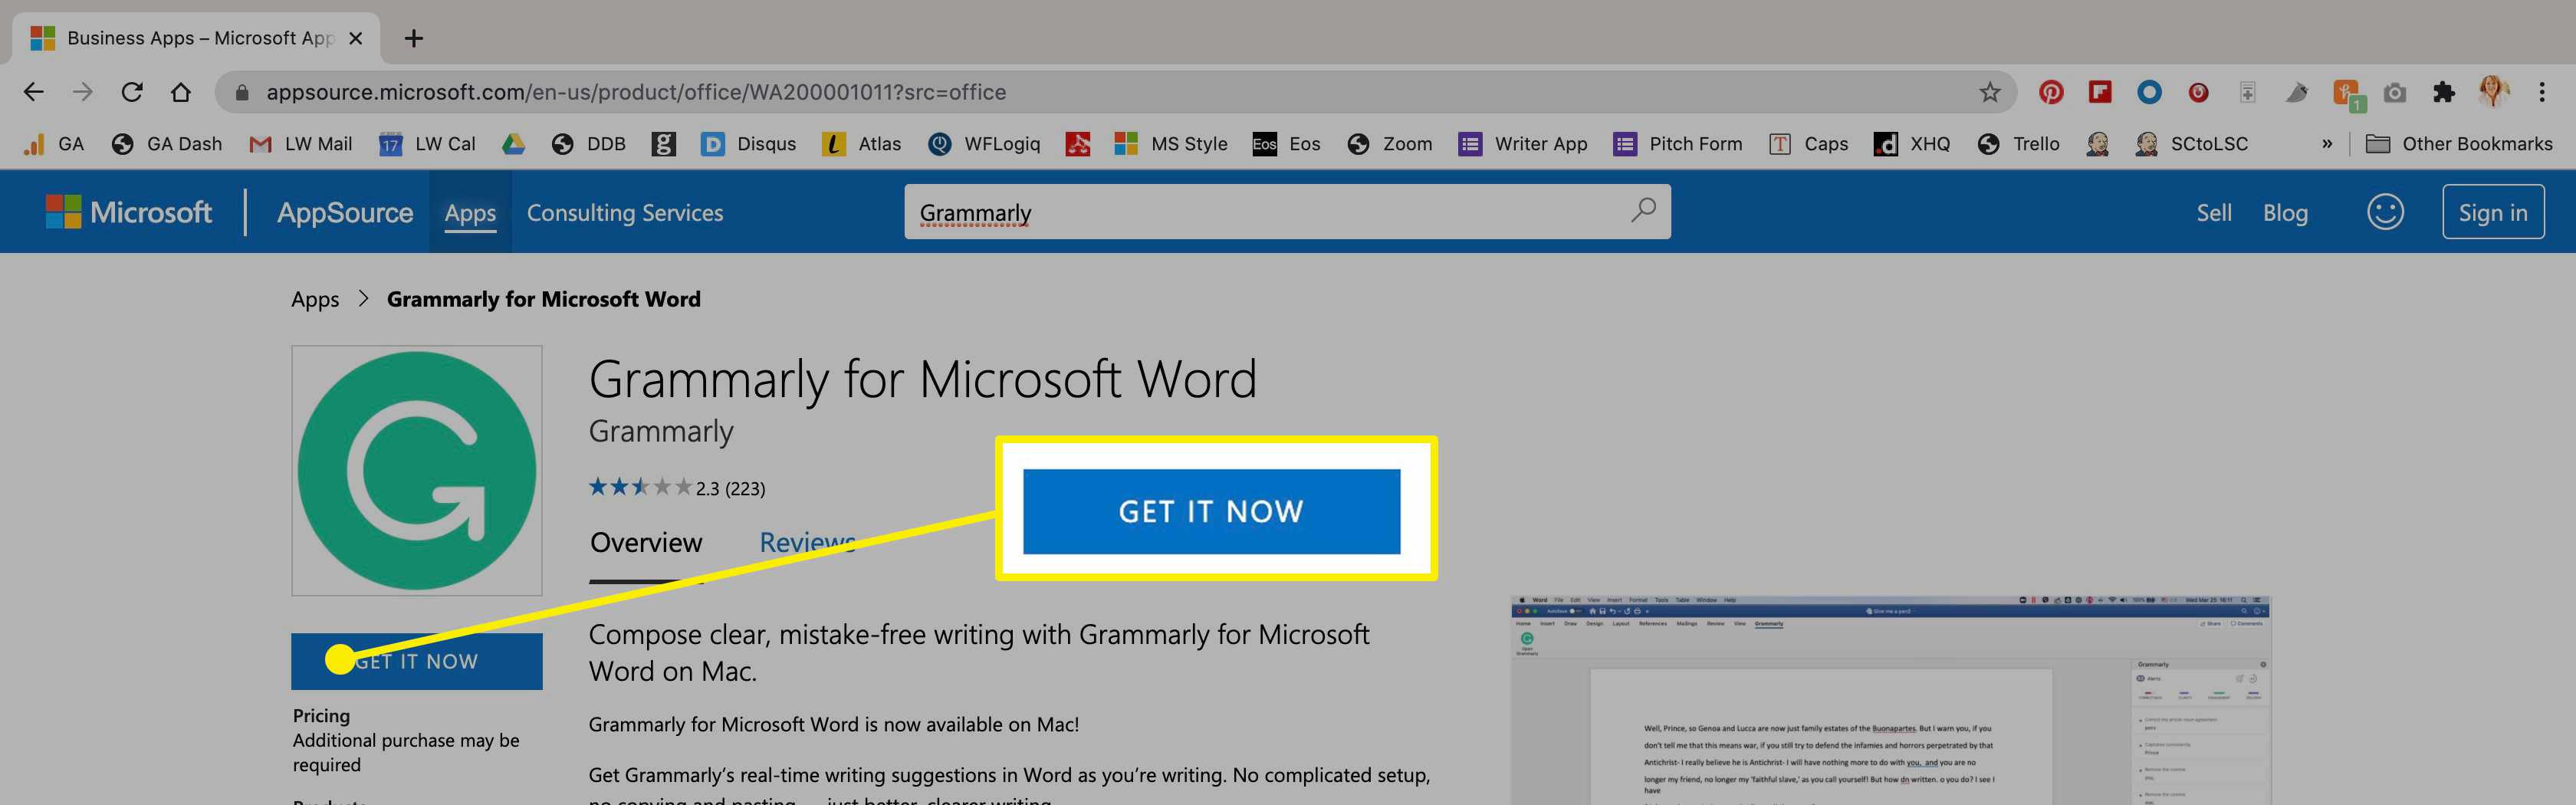 De Grammarly-app in de Microsoft Store op Mac.